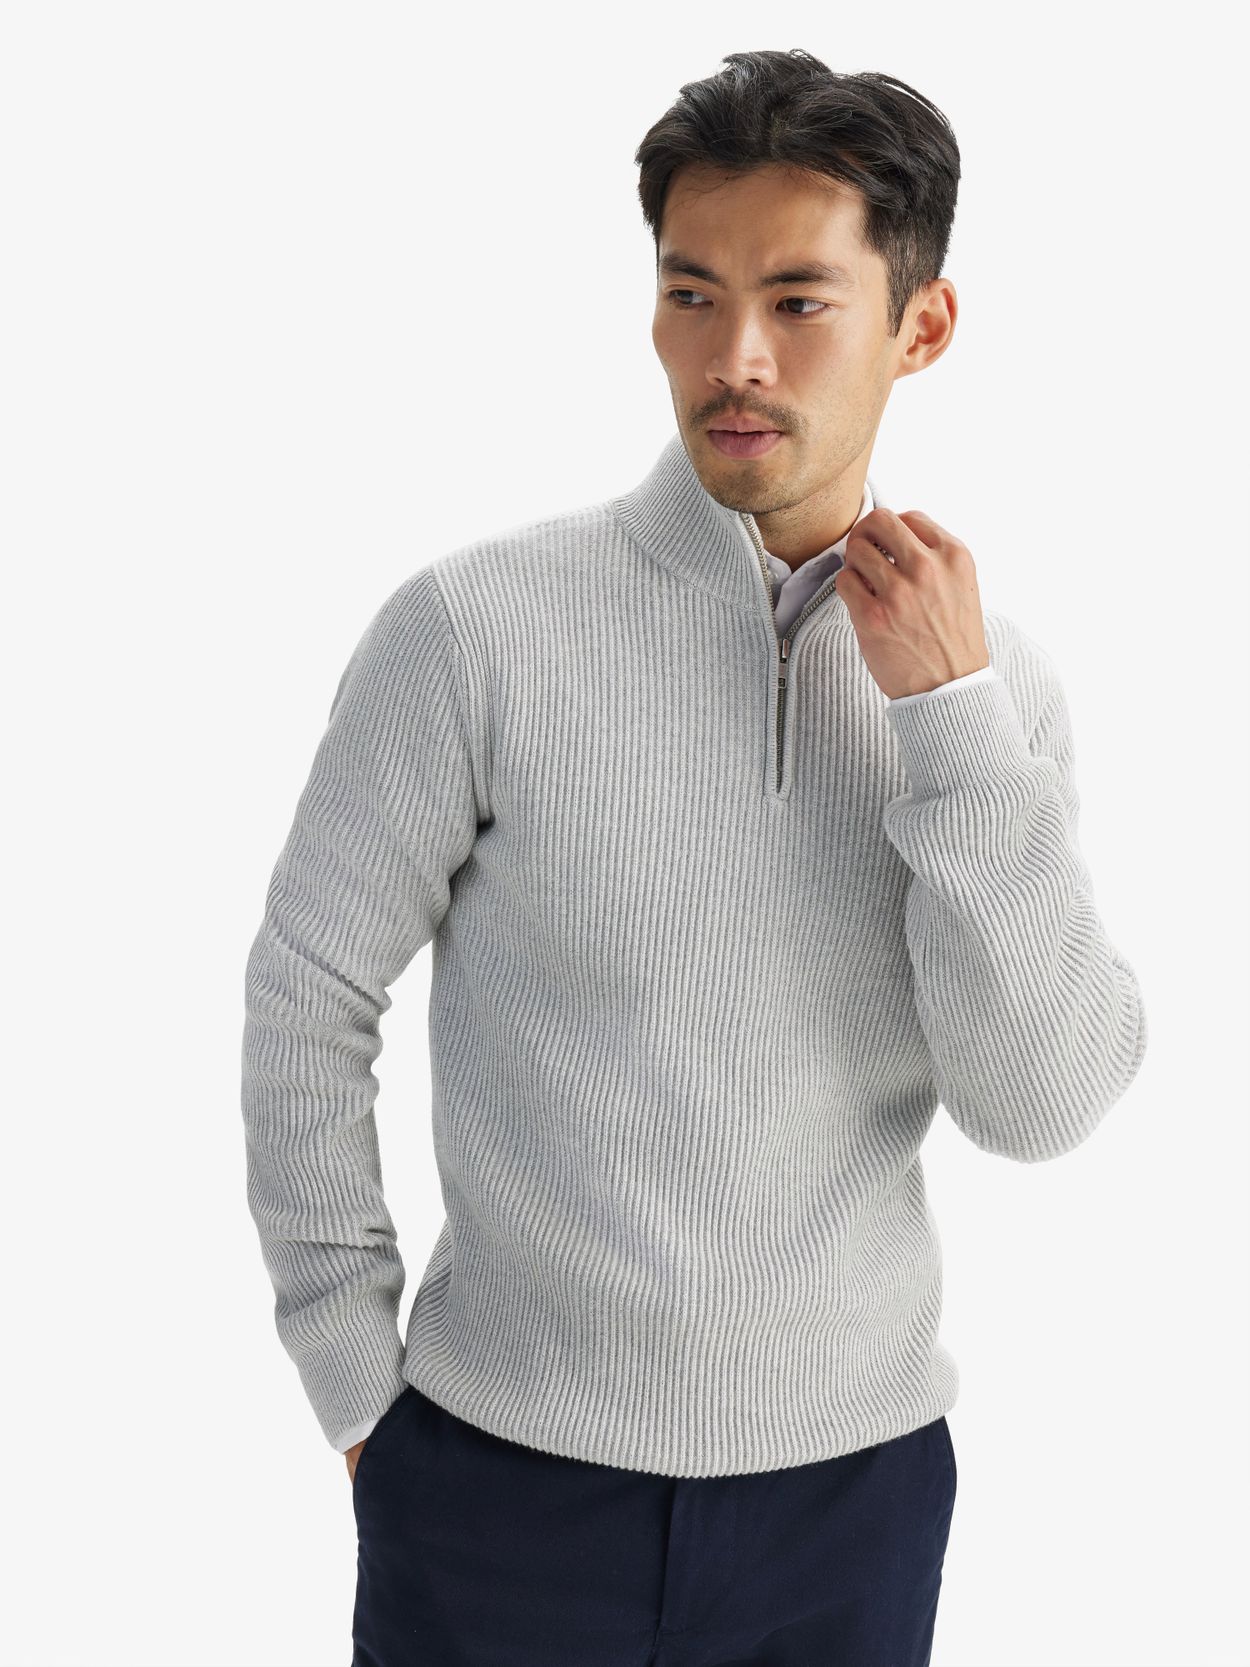 Light Grey Zipper Sweater